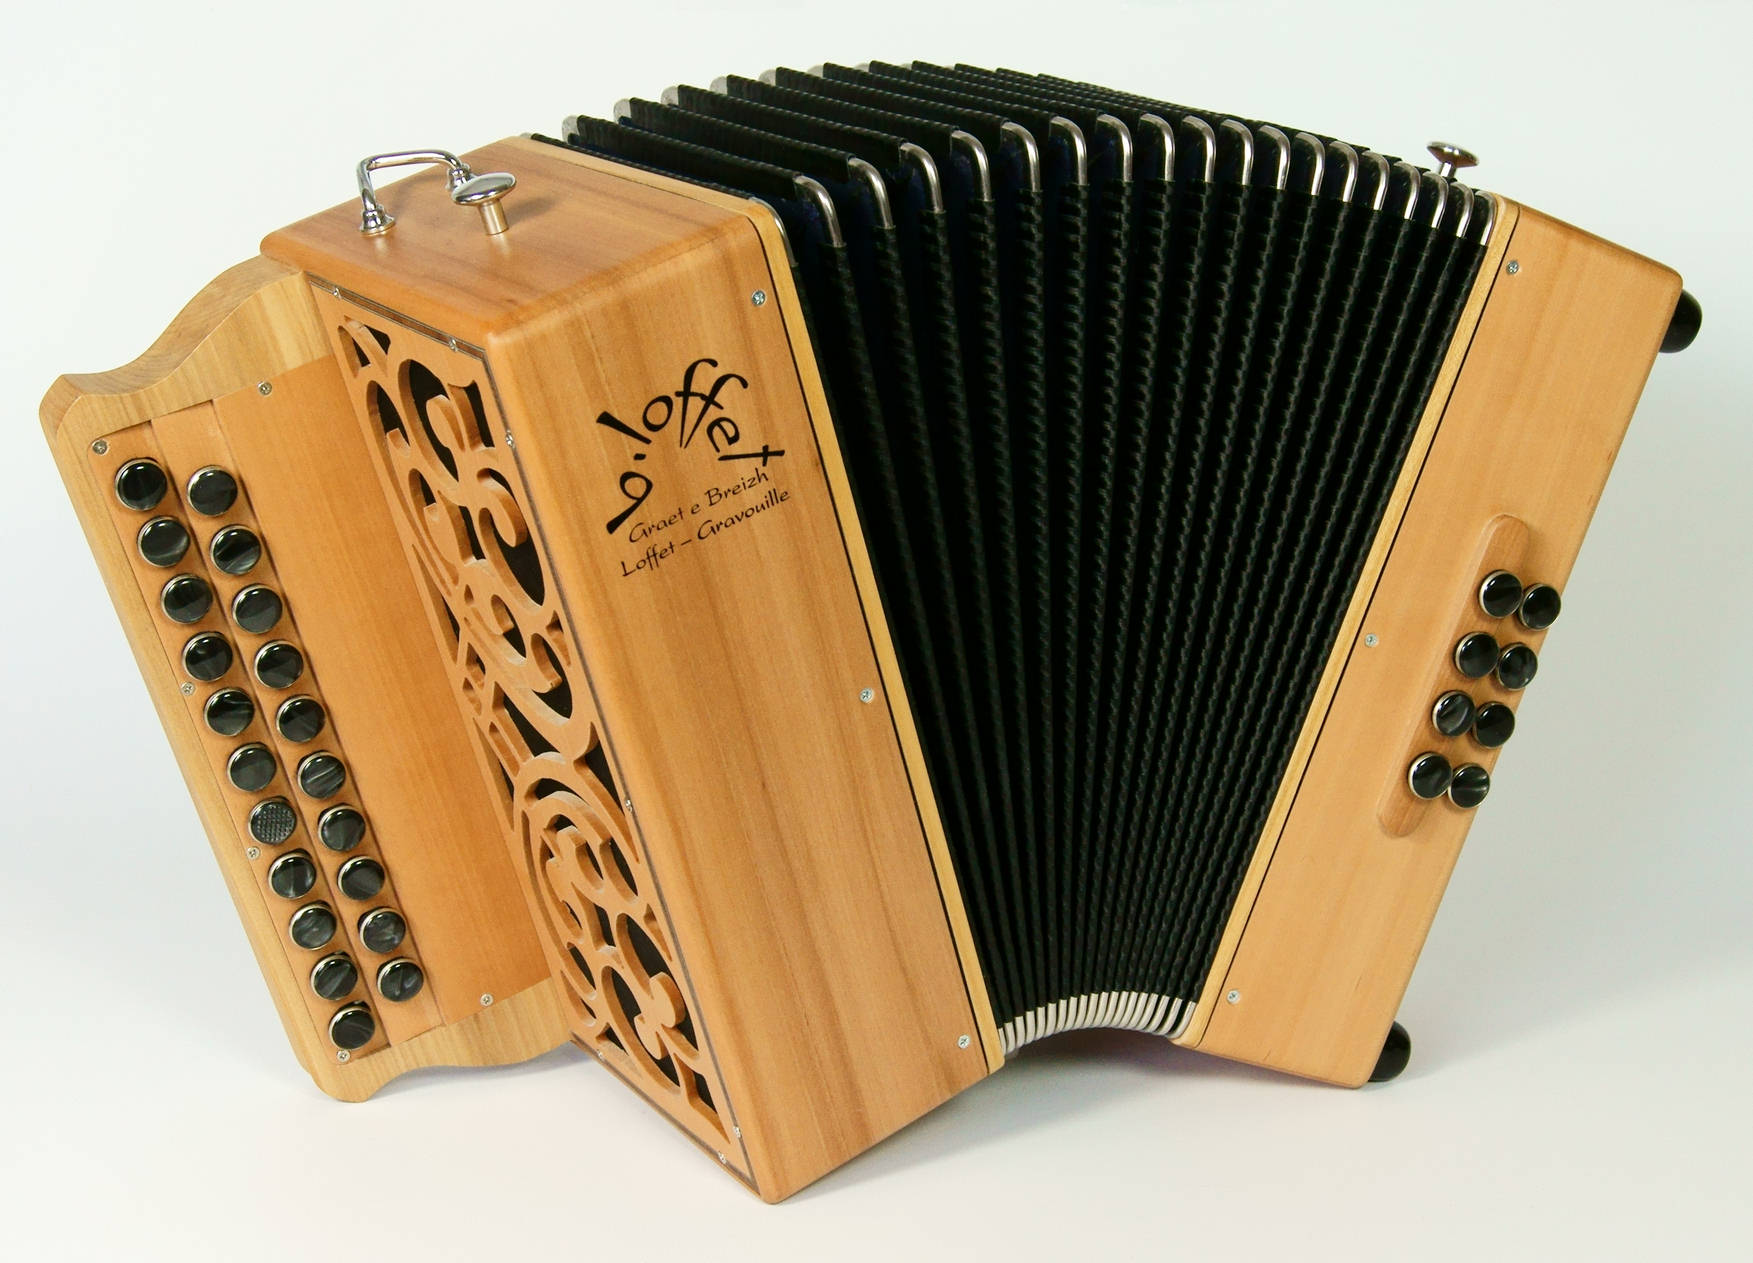 Cherche cours d'accordéon (troc)